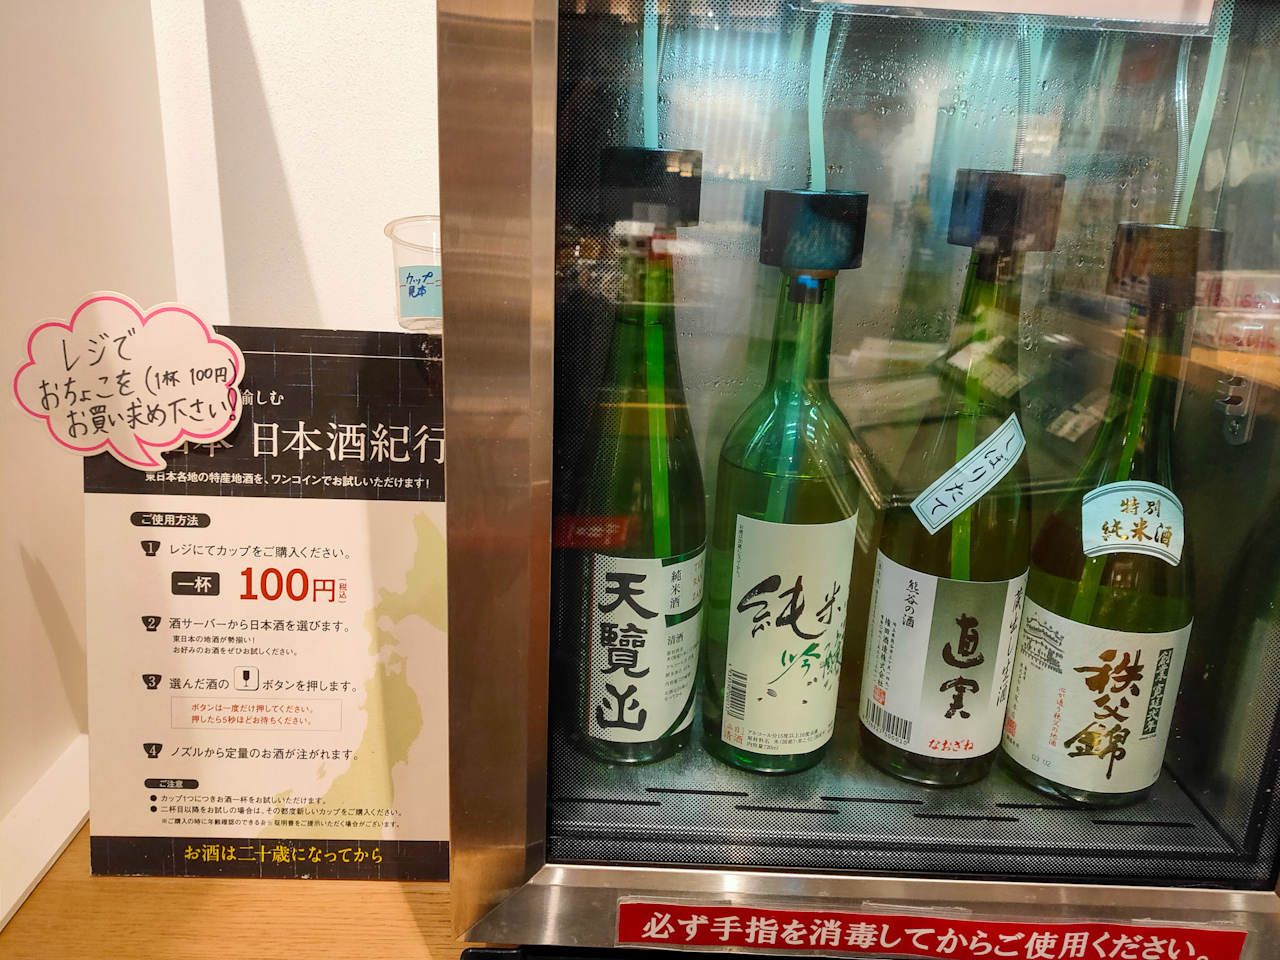 日本酒は1杯100円(税込)で試飲できます。　※ただし、試飲は二十歳になってから。